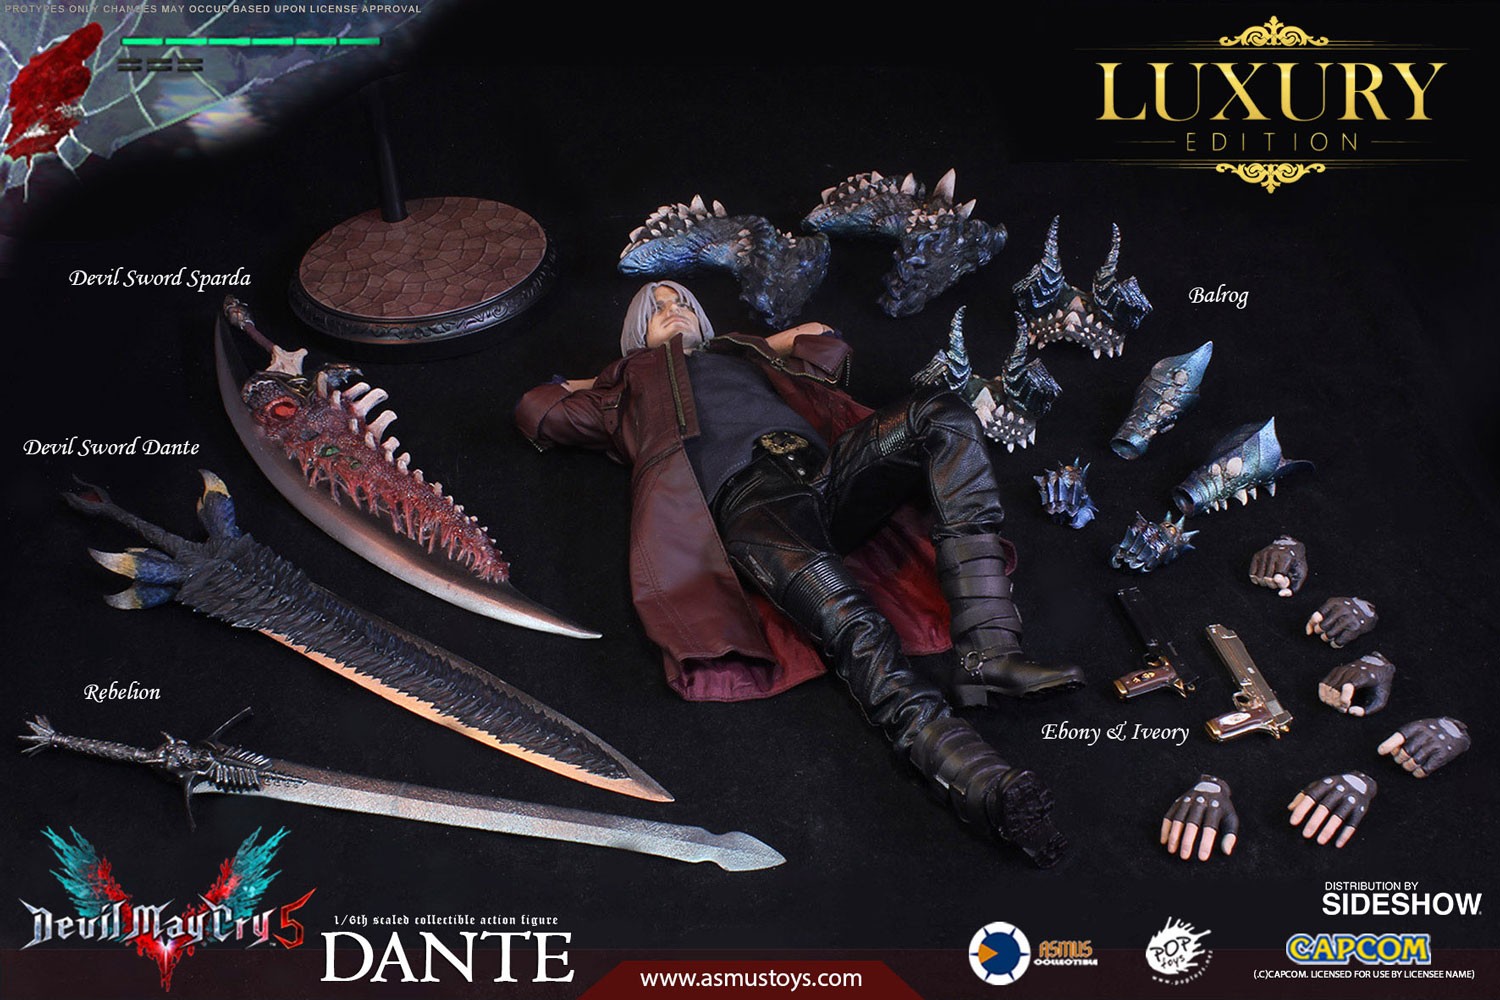 Dante (Luxury Edition)- Prototype Shown